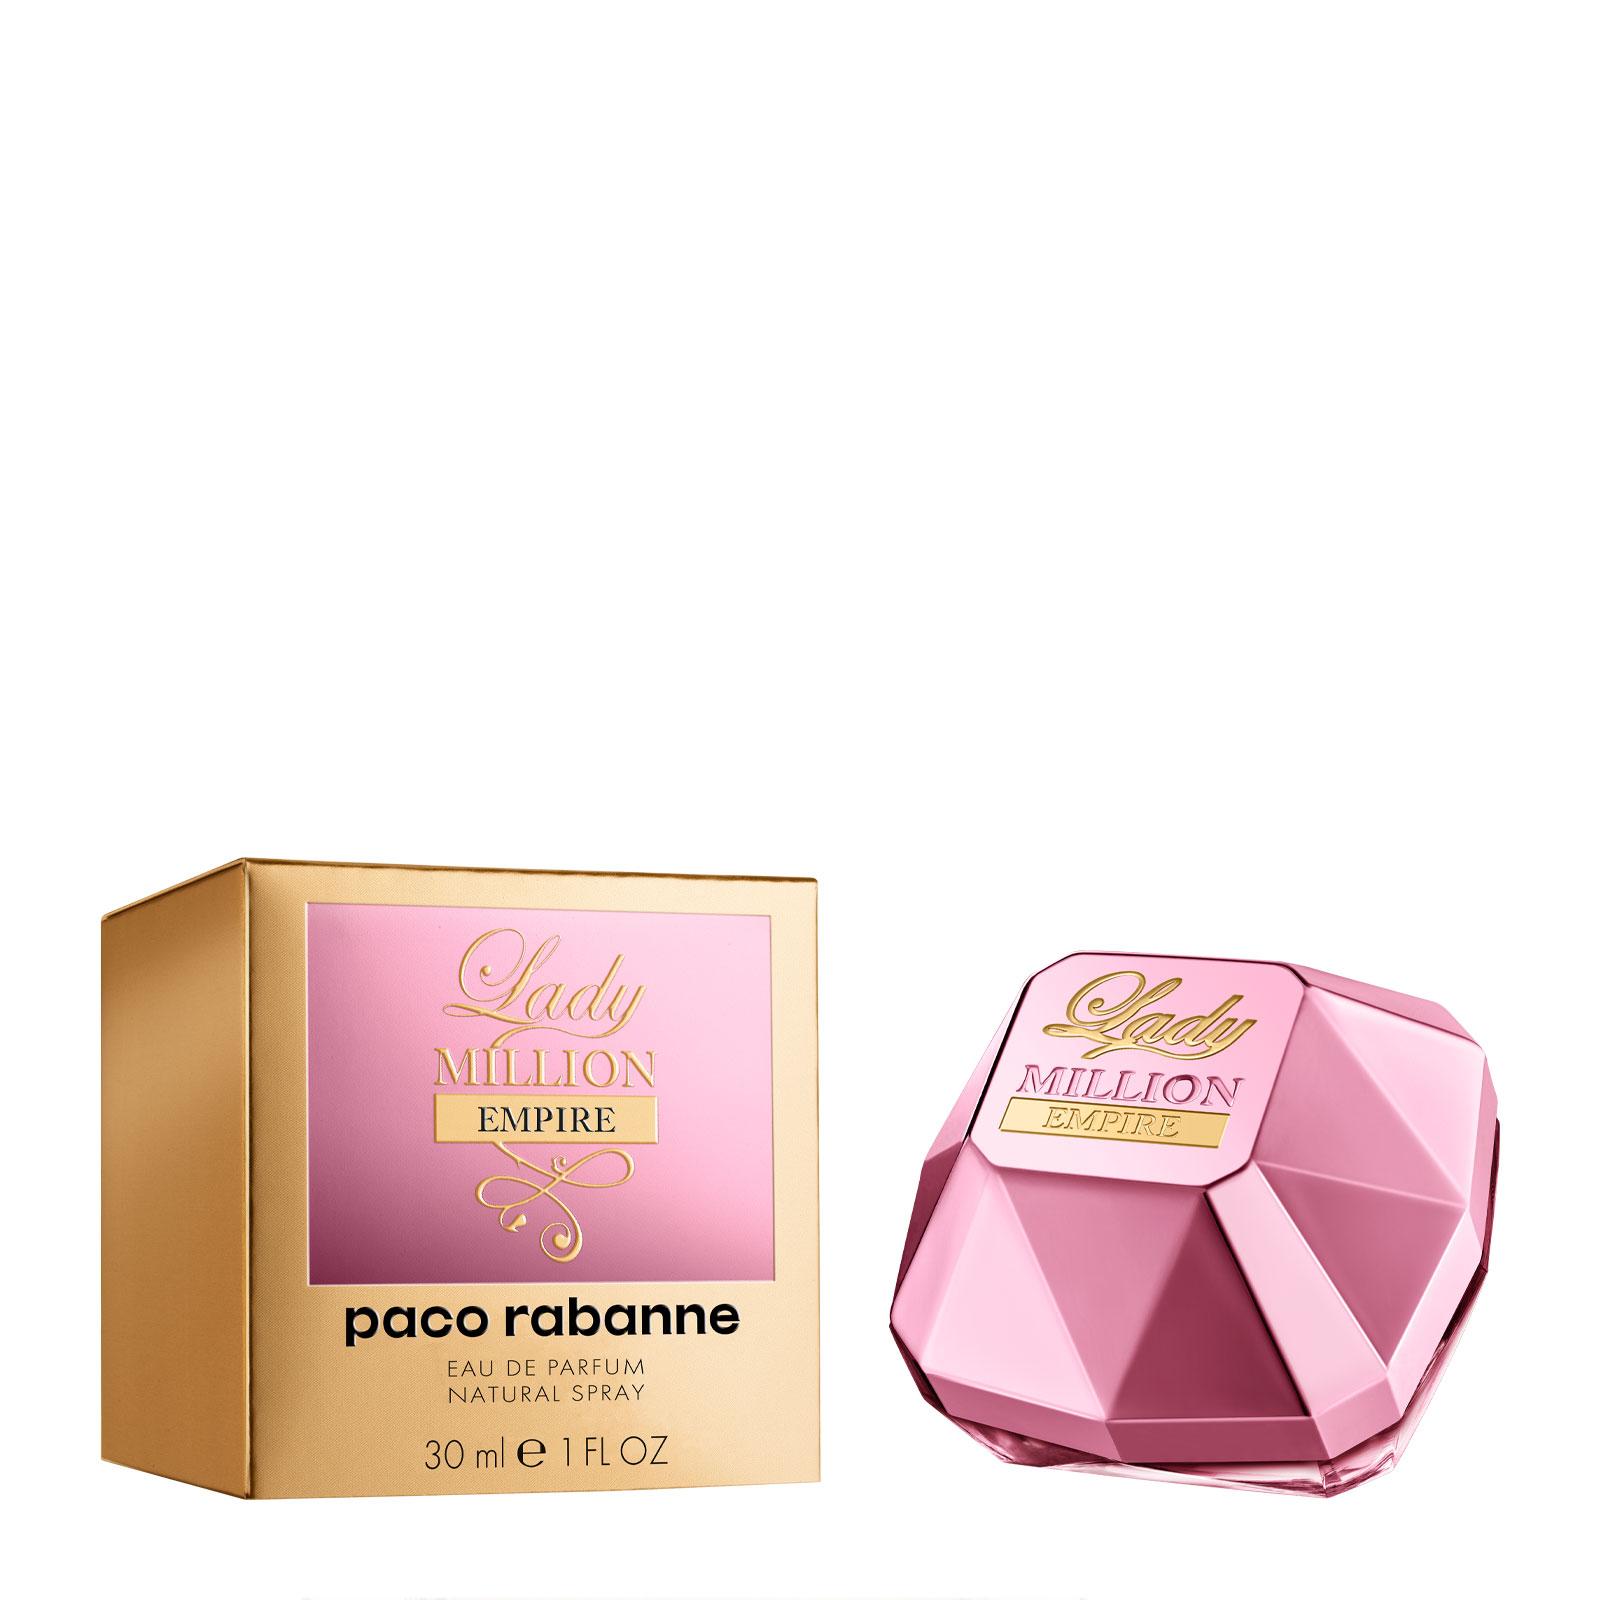 Paco Rabanne Lady Million Empire Eau de Parfum 30ml - Feelunique